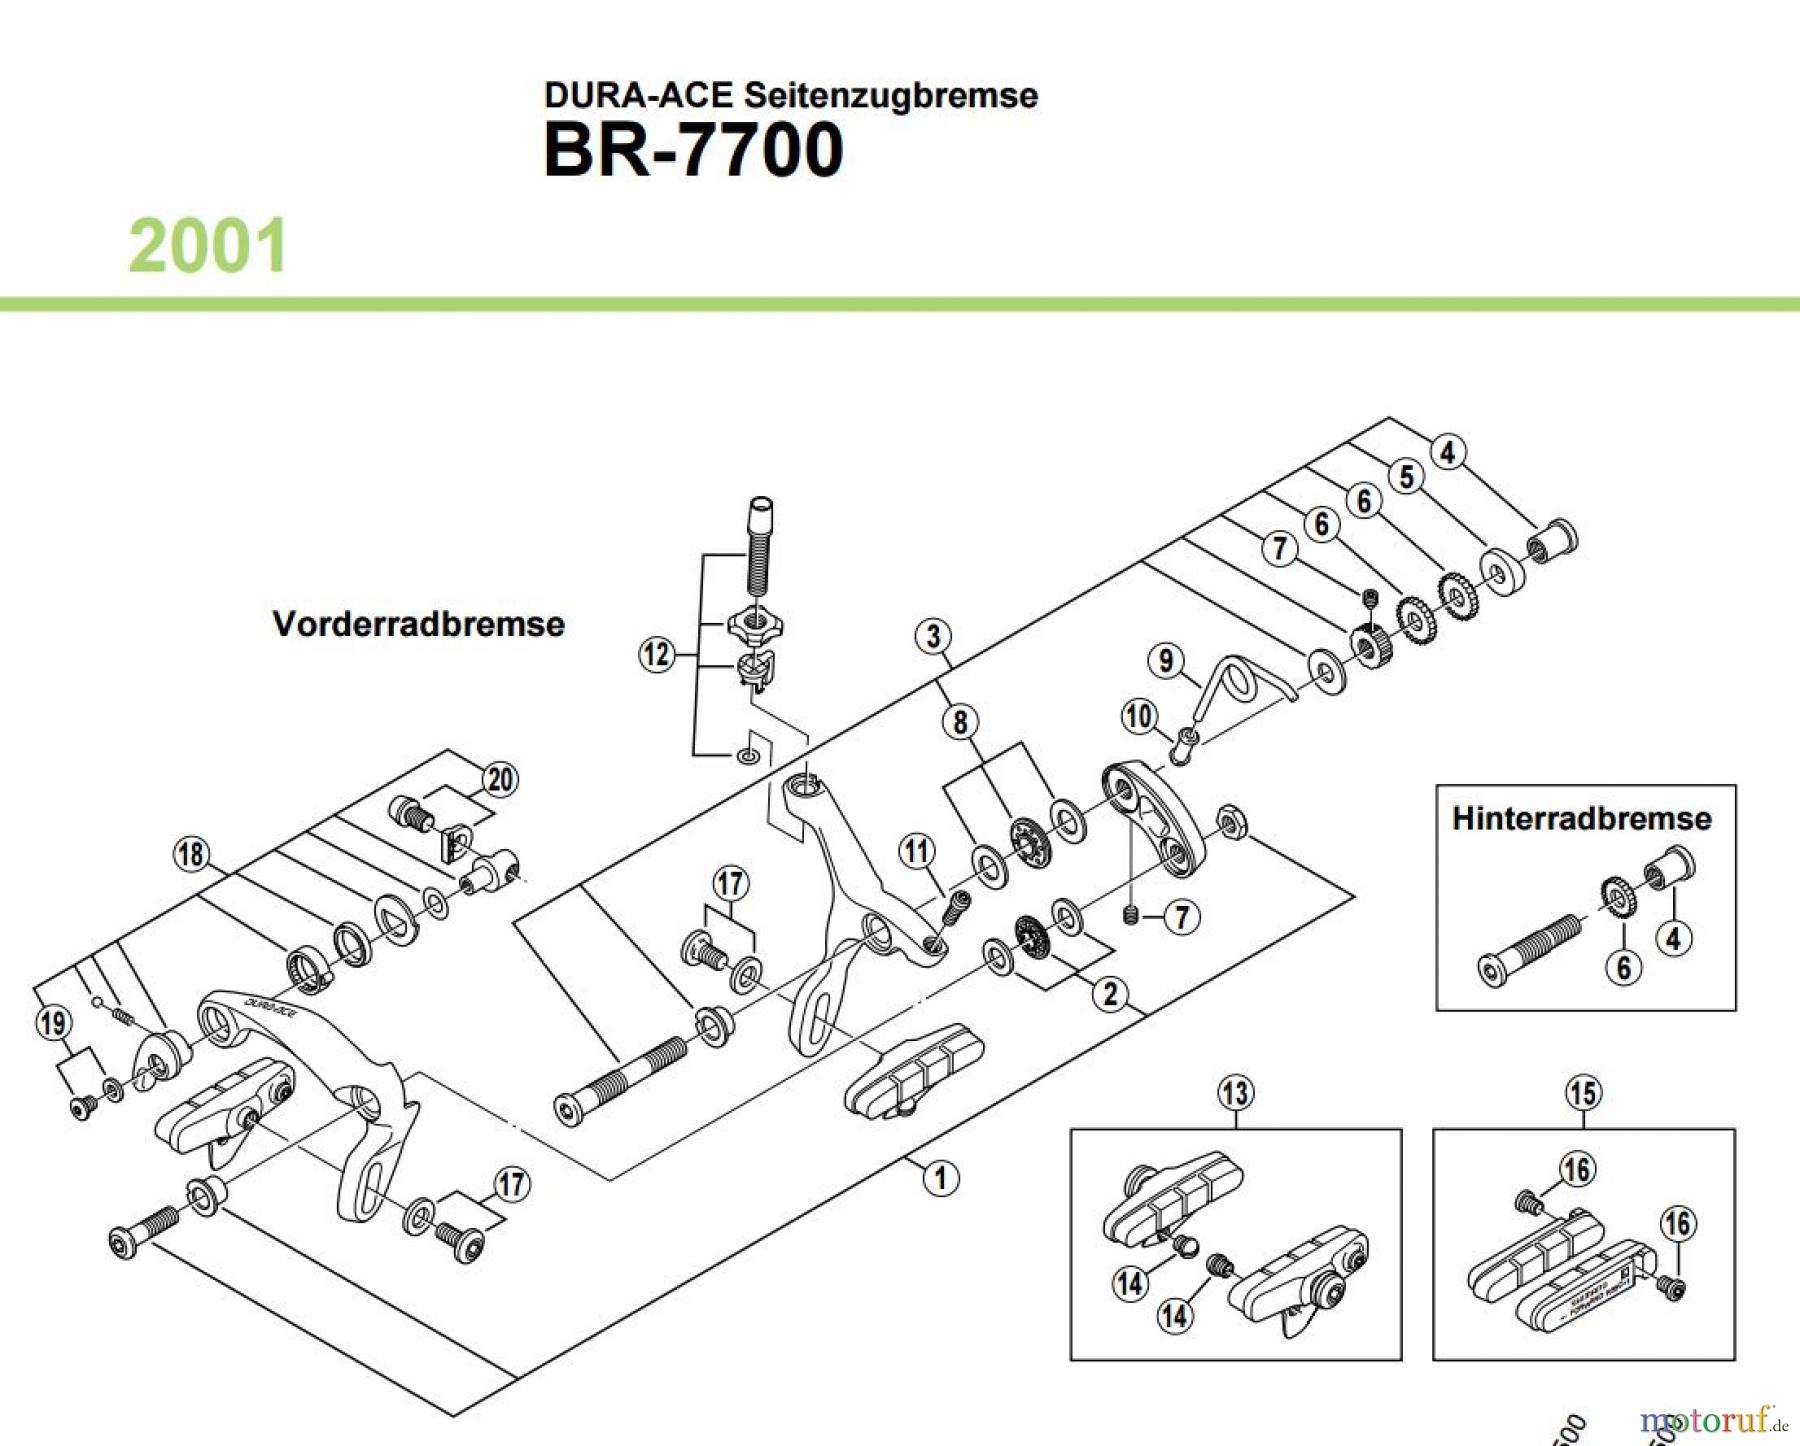  Shimano BR Brake - Bremse BR-7700 2001 DURA-ACE Seitenzugbremse